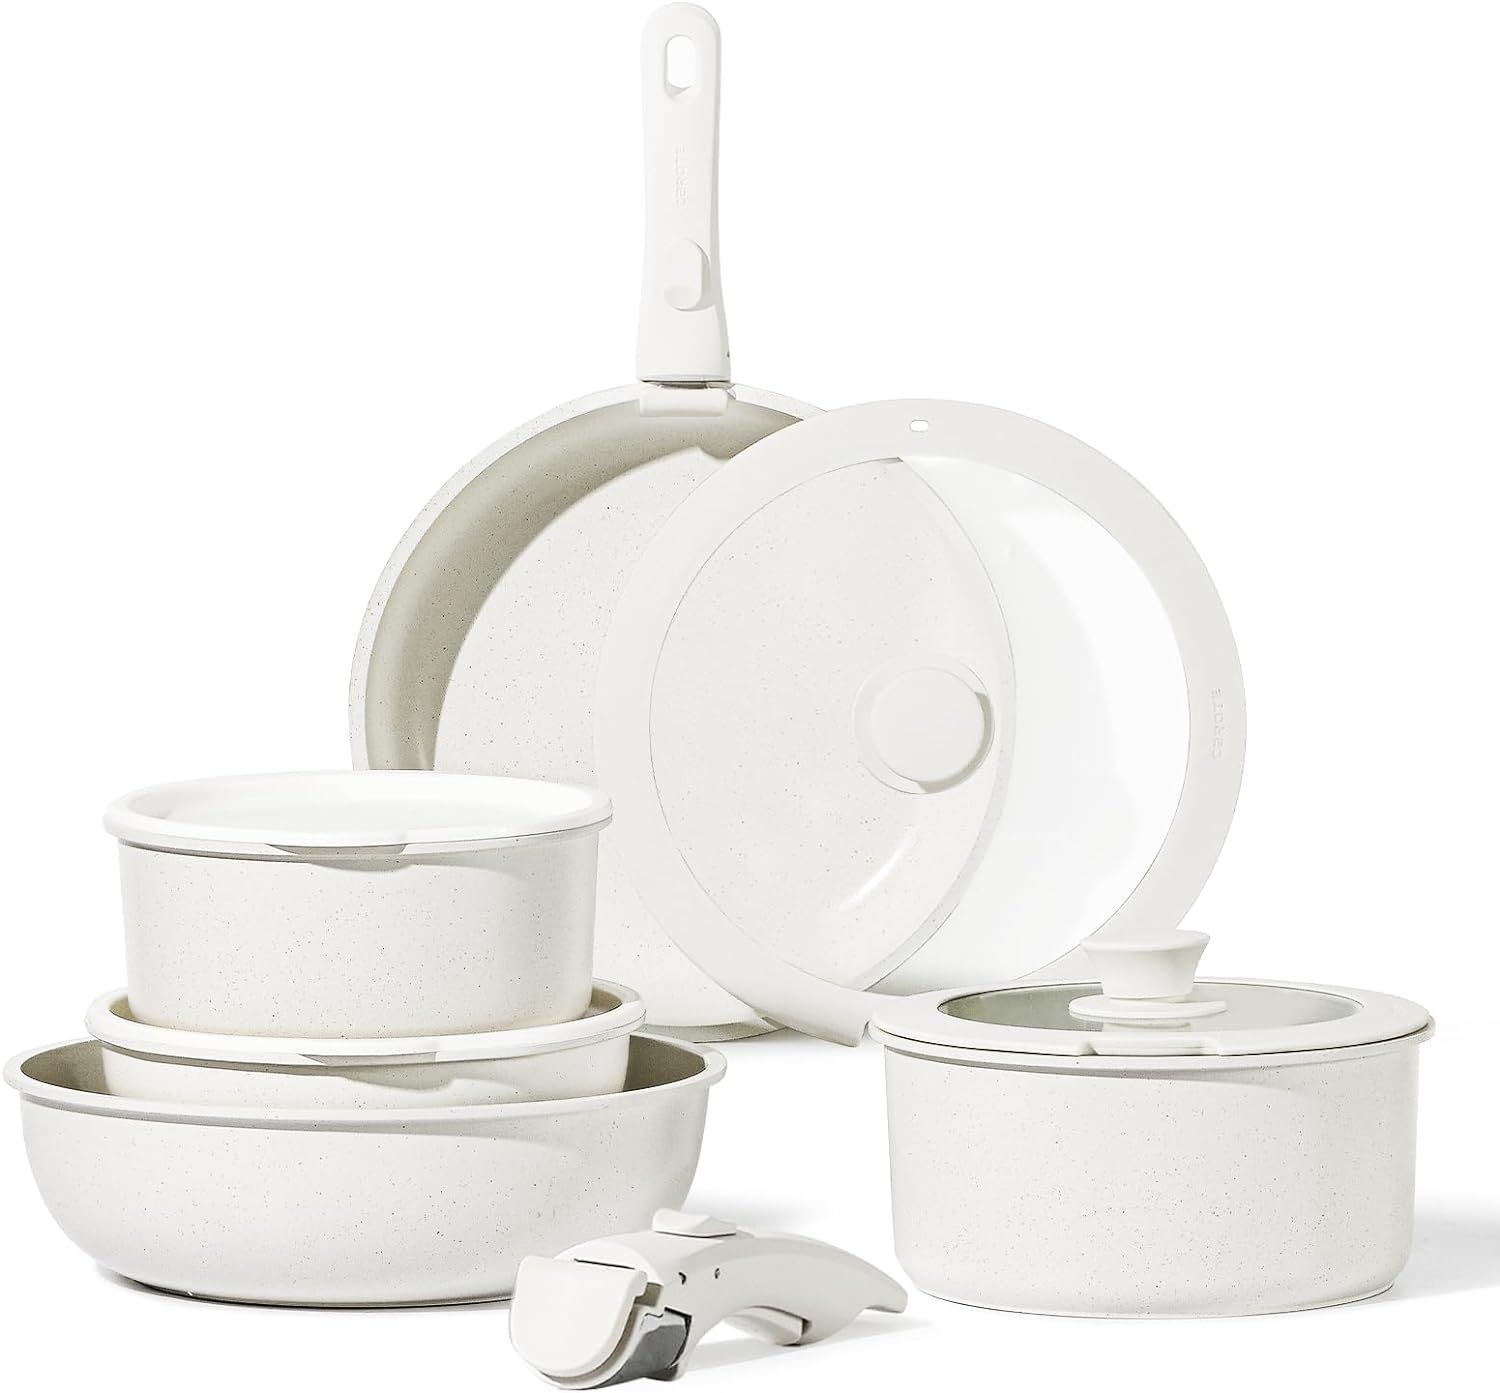 CAROTE 11pcs Pots and Pans Set, Nonstick Cookware Sets Detachable Handle, Induction RV Kitchen Se... | Amazon (US)